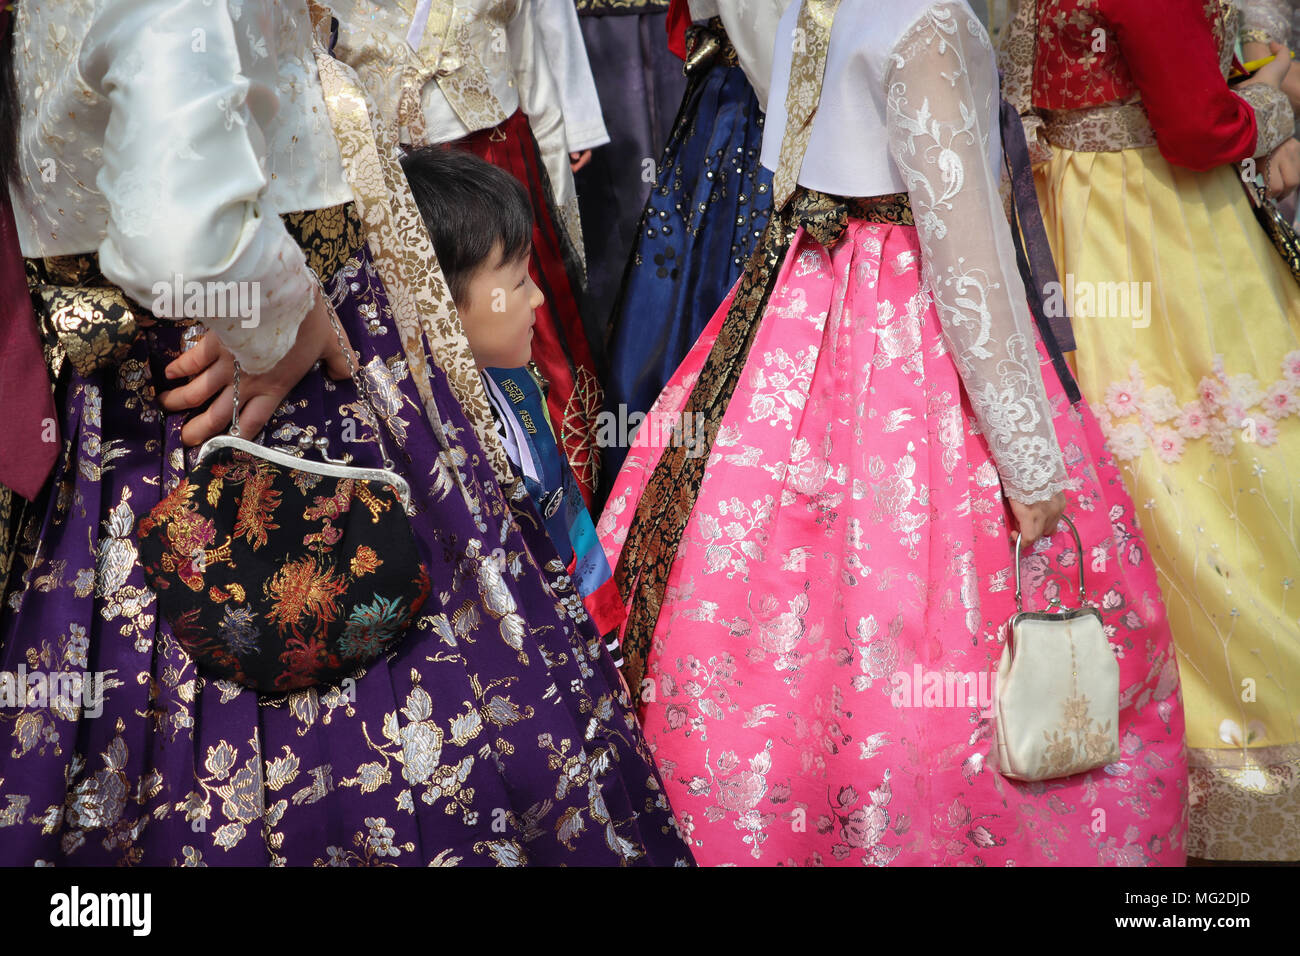 Ein kleiner Junge versteckt sich unter die Röcke in einer Gruppe von koreanischen Frauen das Tragen der traditionellen hanbok Mode, in brillanten Farben. Angesehen Schultern nach unten. Stockfoto